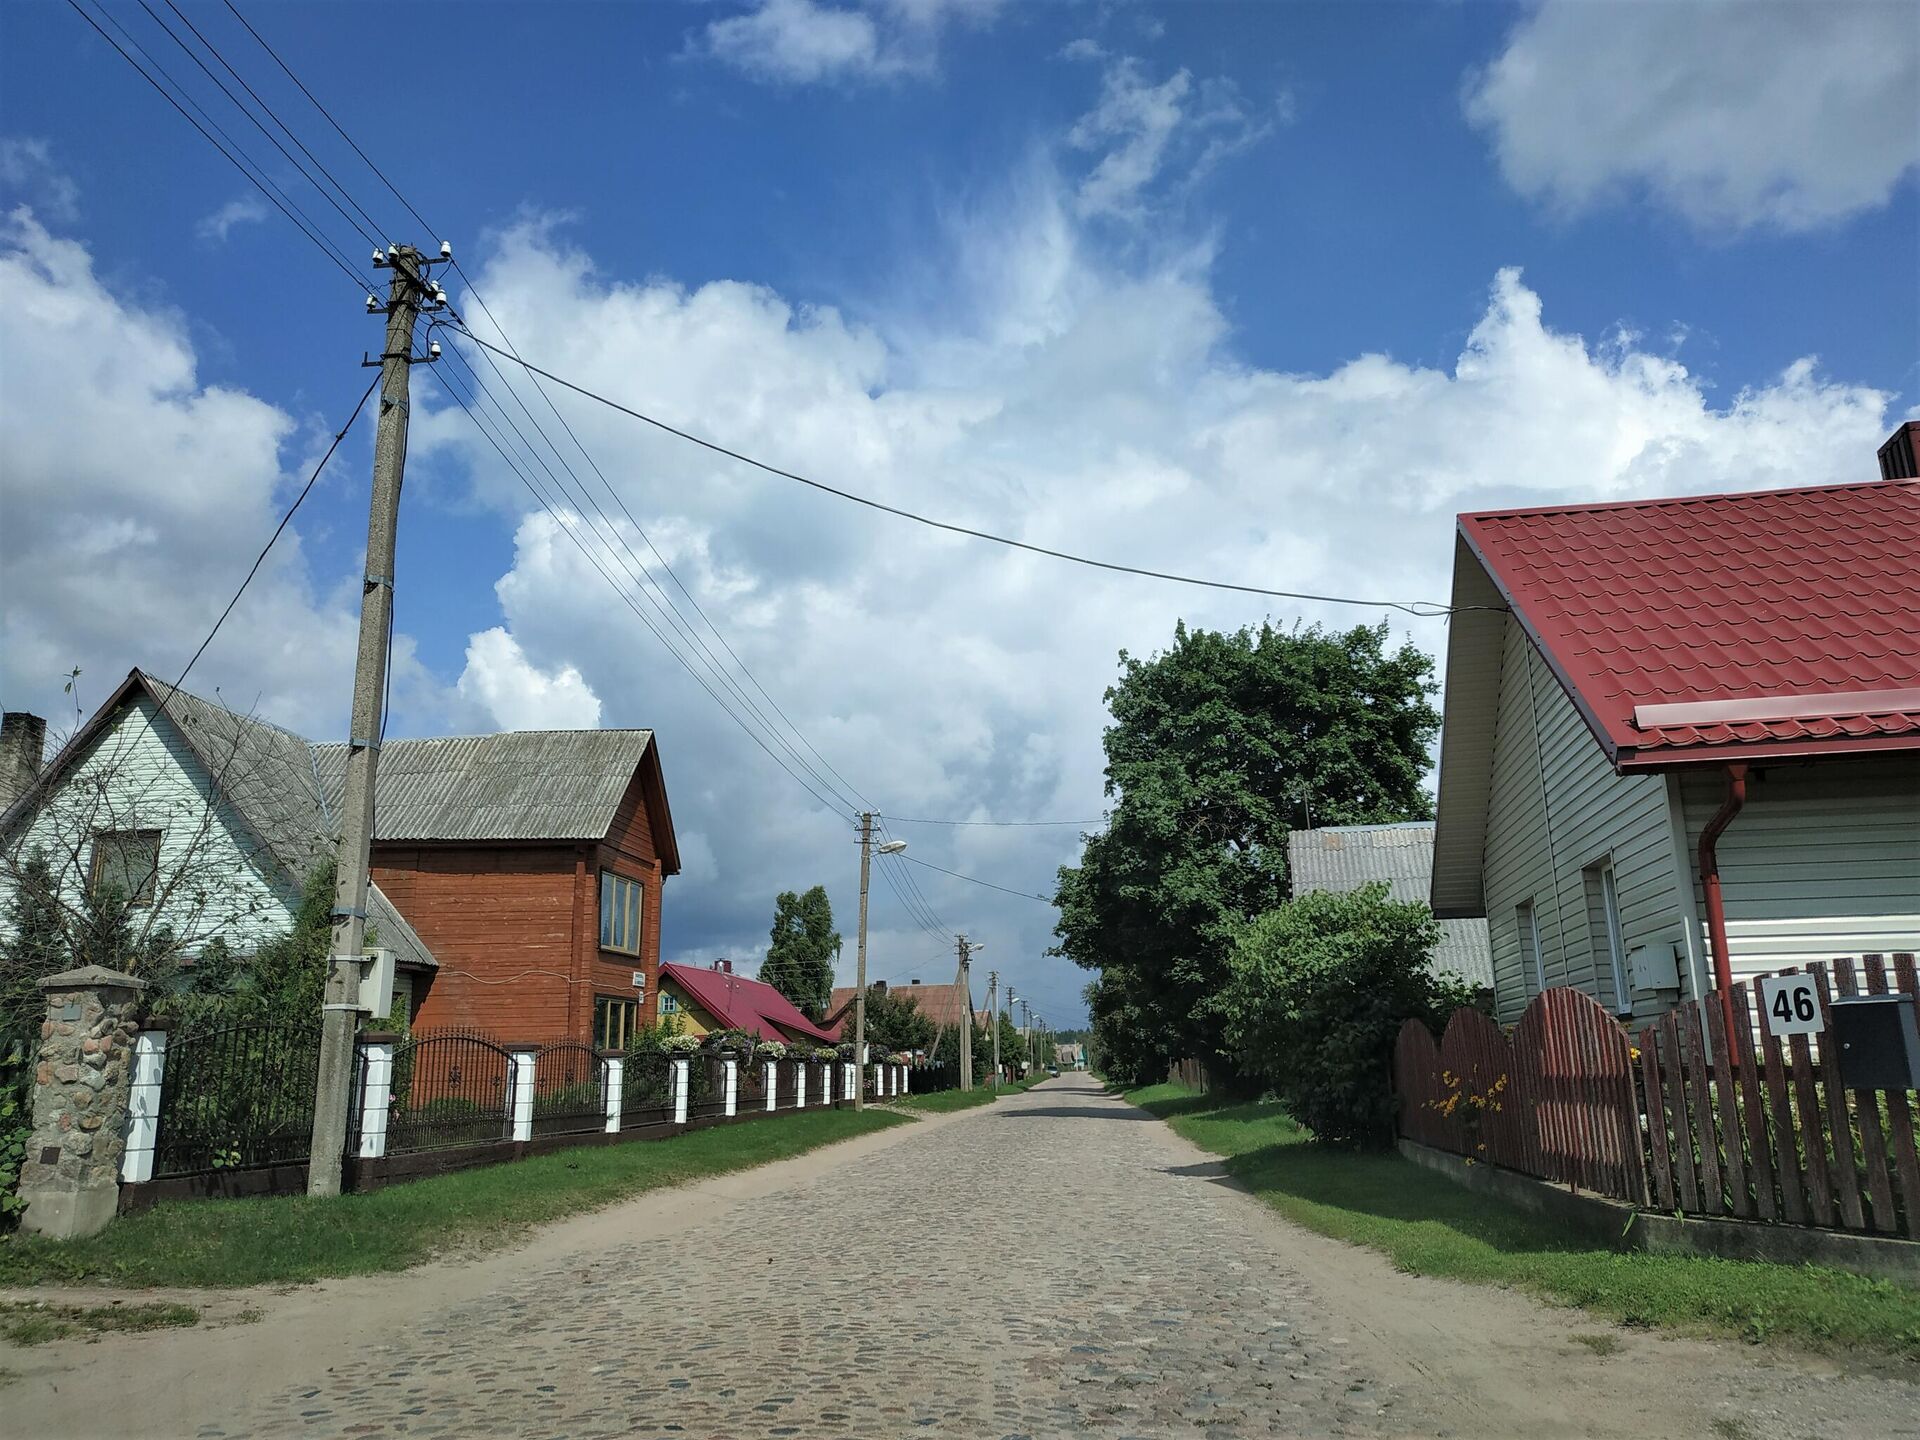 Улица в деревне Руднинкай в Шальчининкайском районе Литвы - Sputnik Беларусь, 1920, 27.08.2021